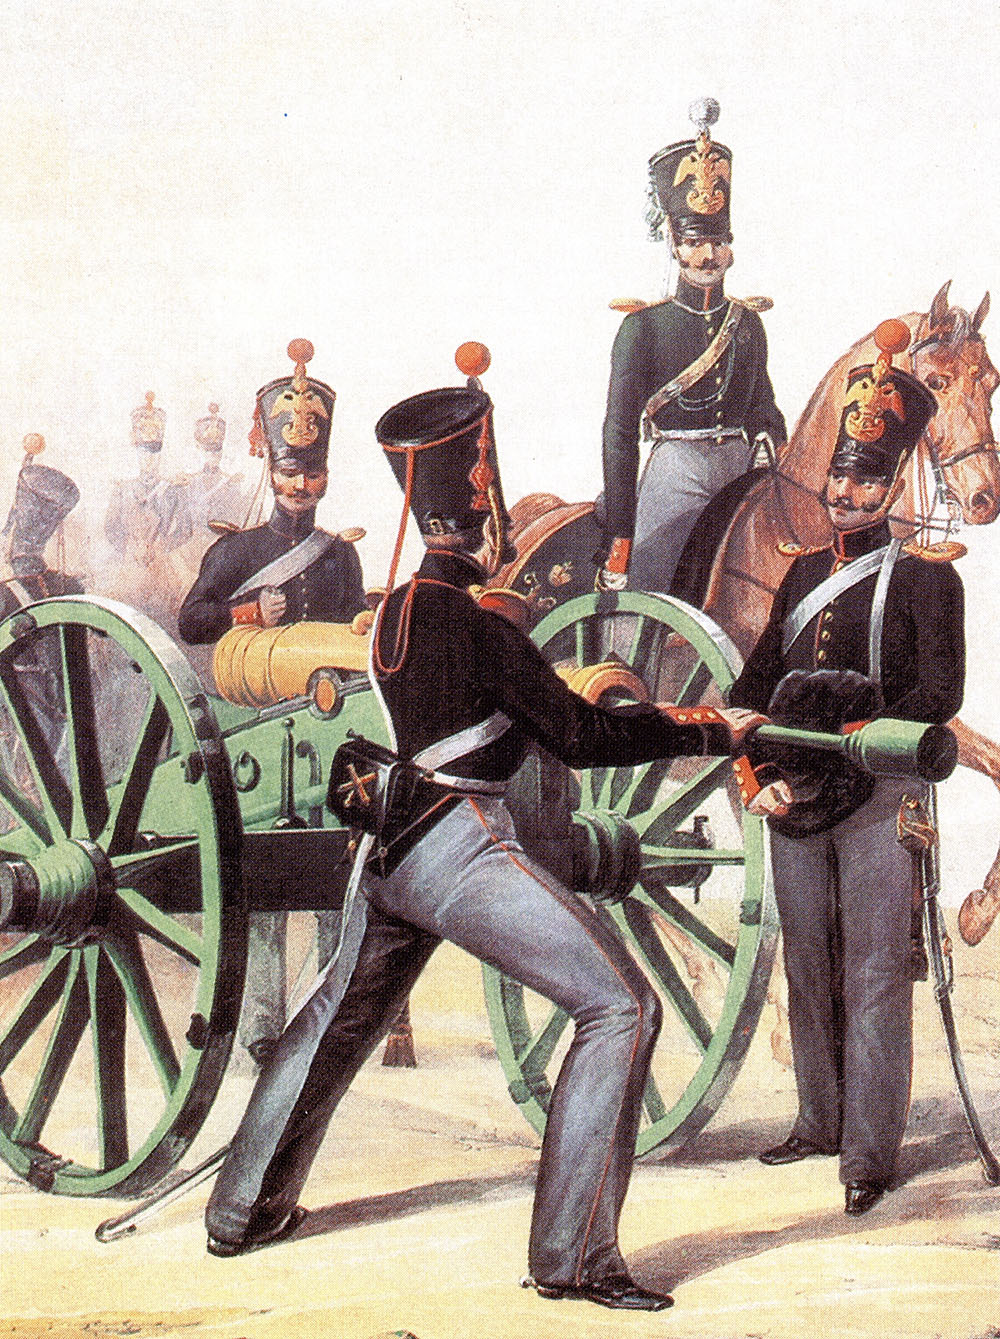 Предположительно Л. Белоусов. "Обер-офицер и рядовые конно-артиллерийской бригады". 1839.